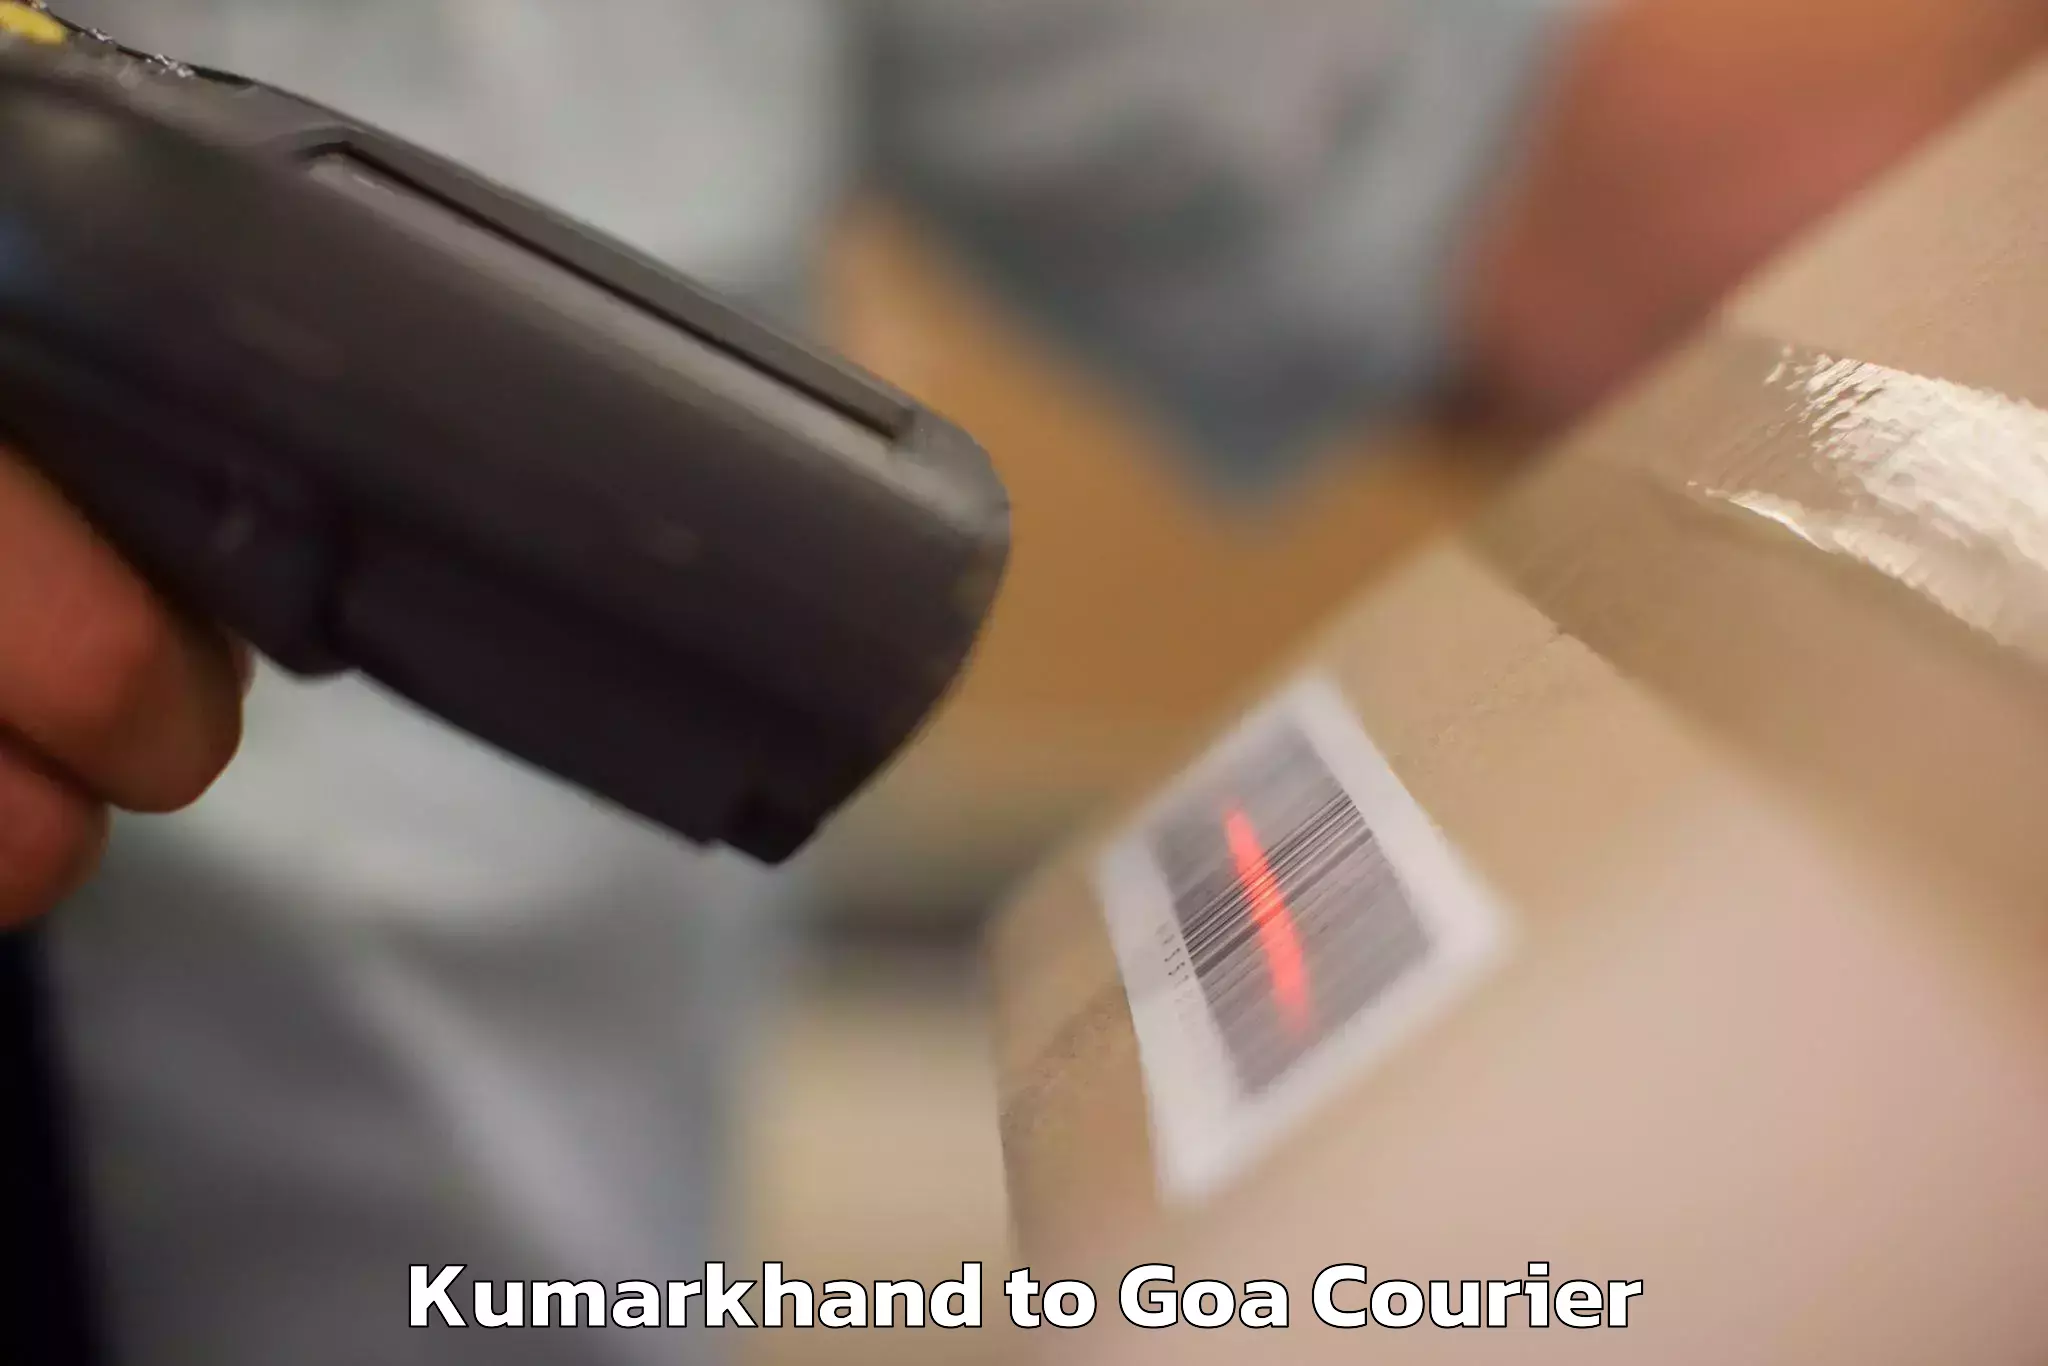 Emergency baggage service Kumarkhand to IIT Goa